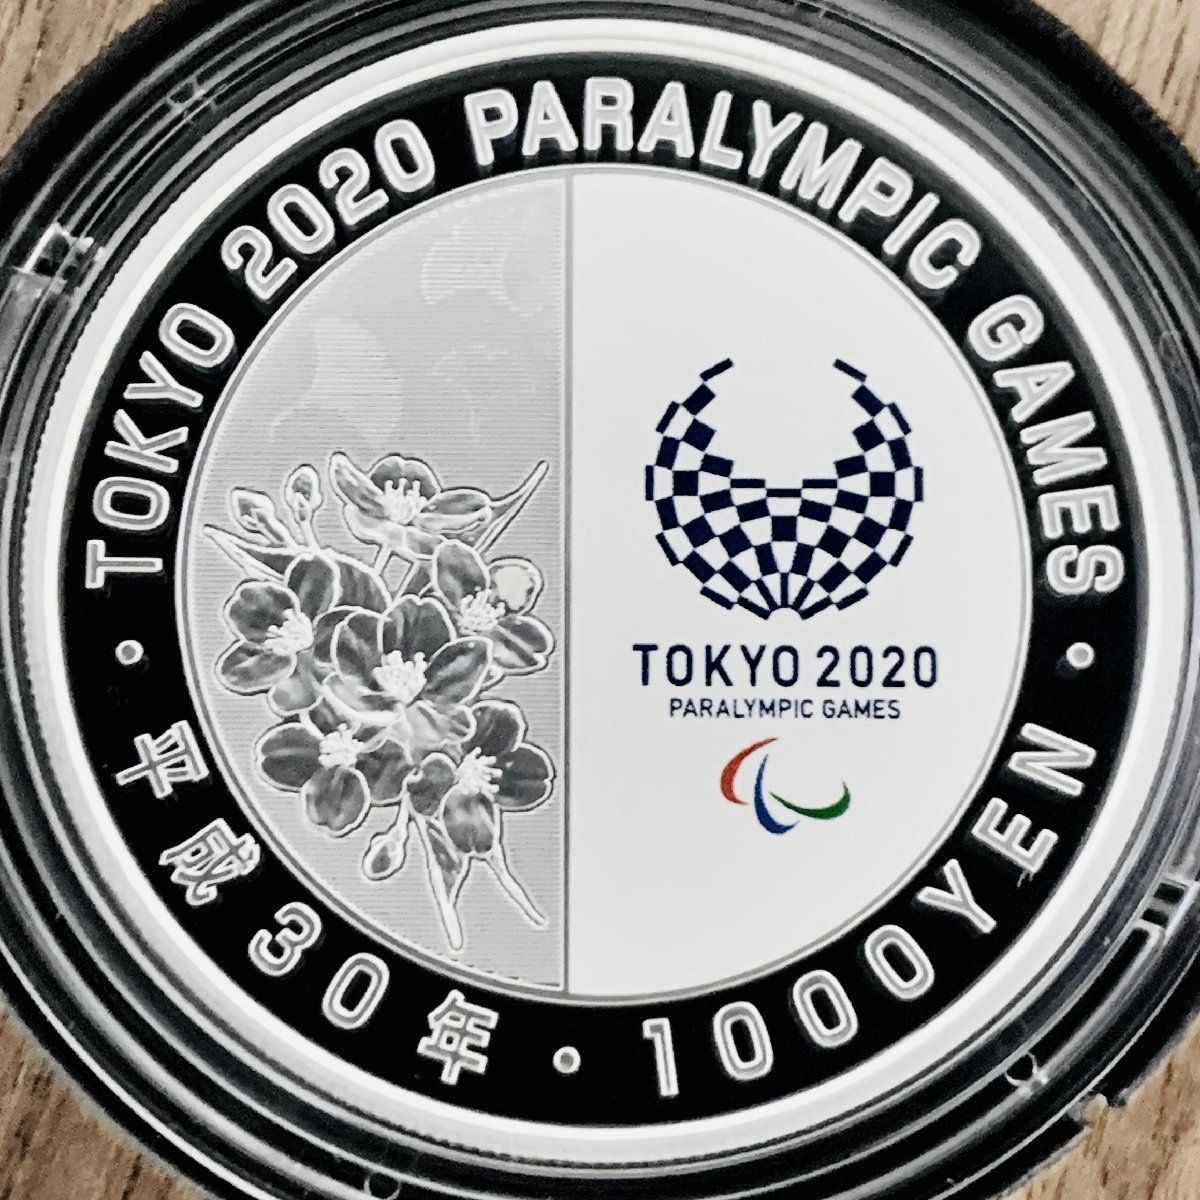 東京パラ 千円銀貨 柔道 東京2020パラリンピック競技大会記念 千円銀